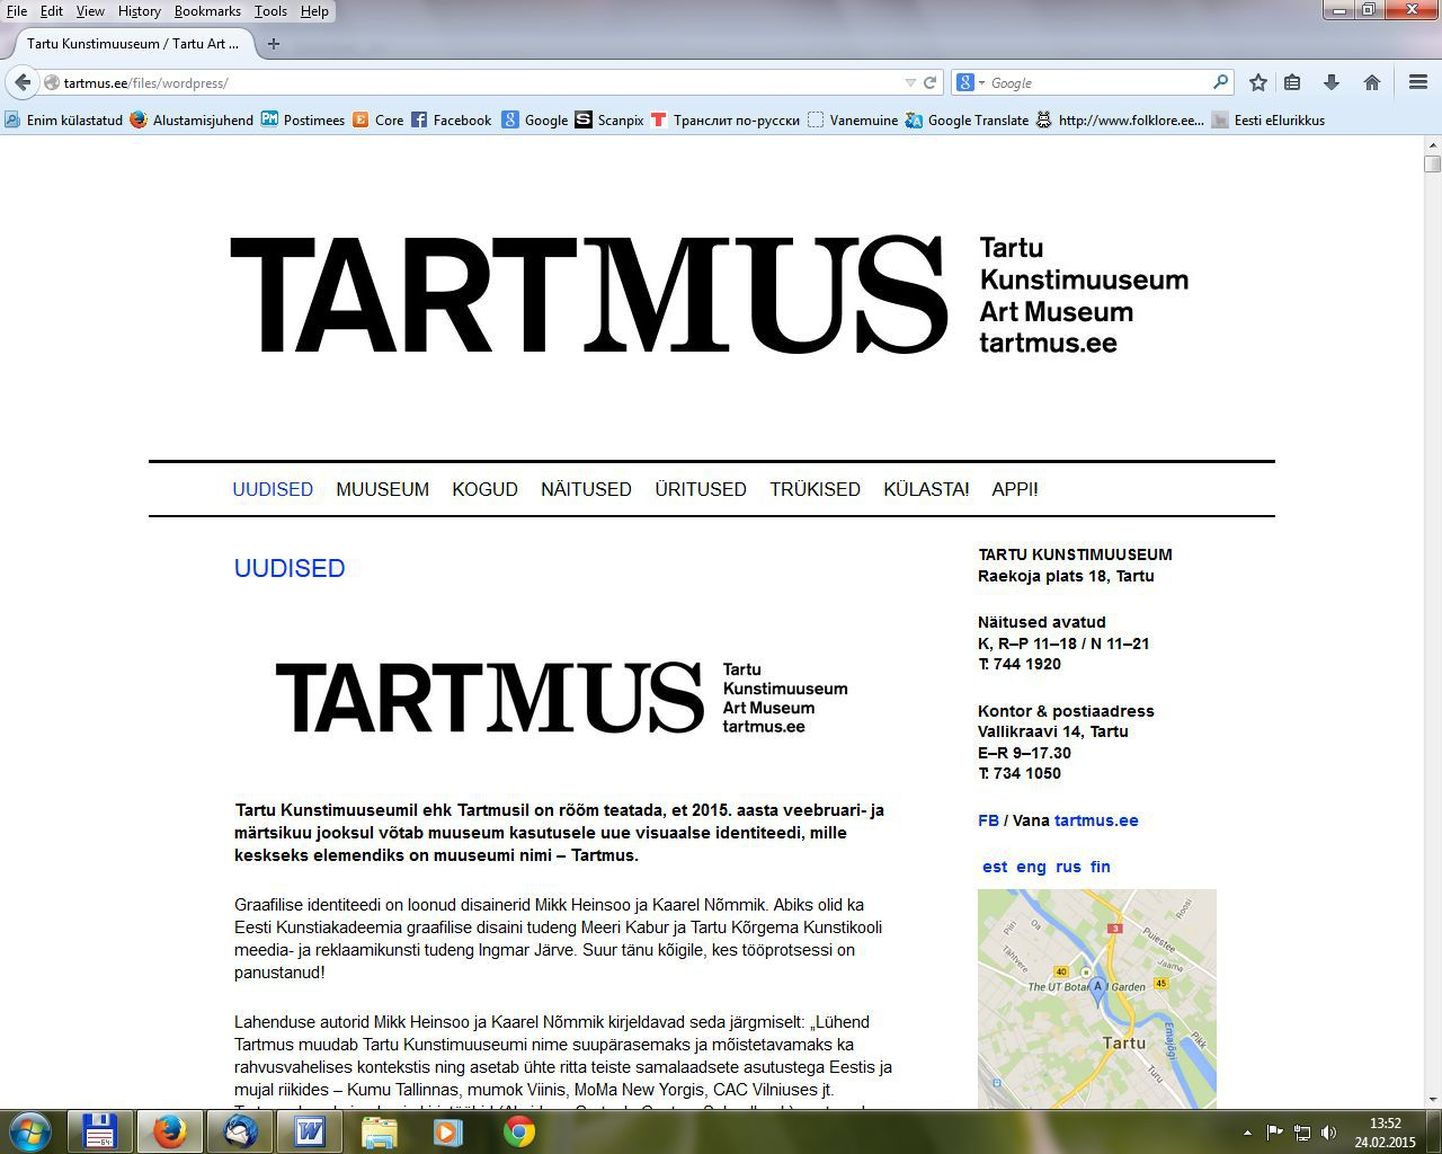 Tartu kunstimuuseumi uue kujundusega veebisait www.tartmus.ee.